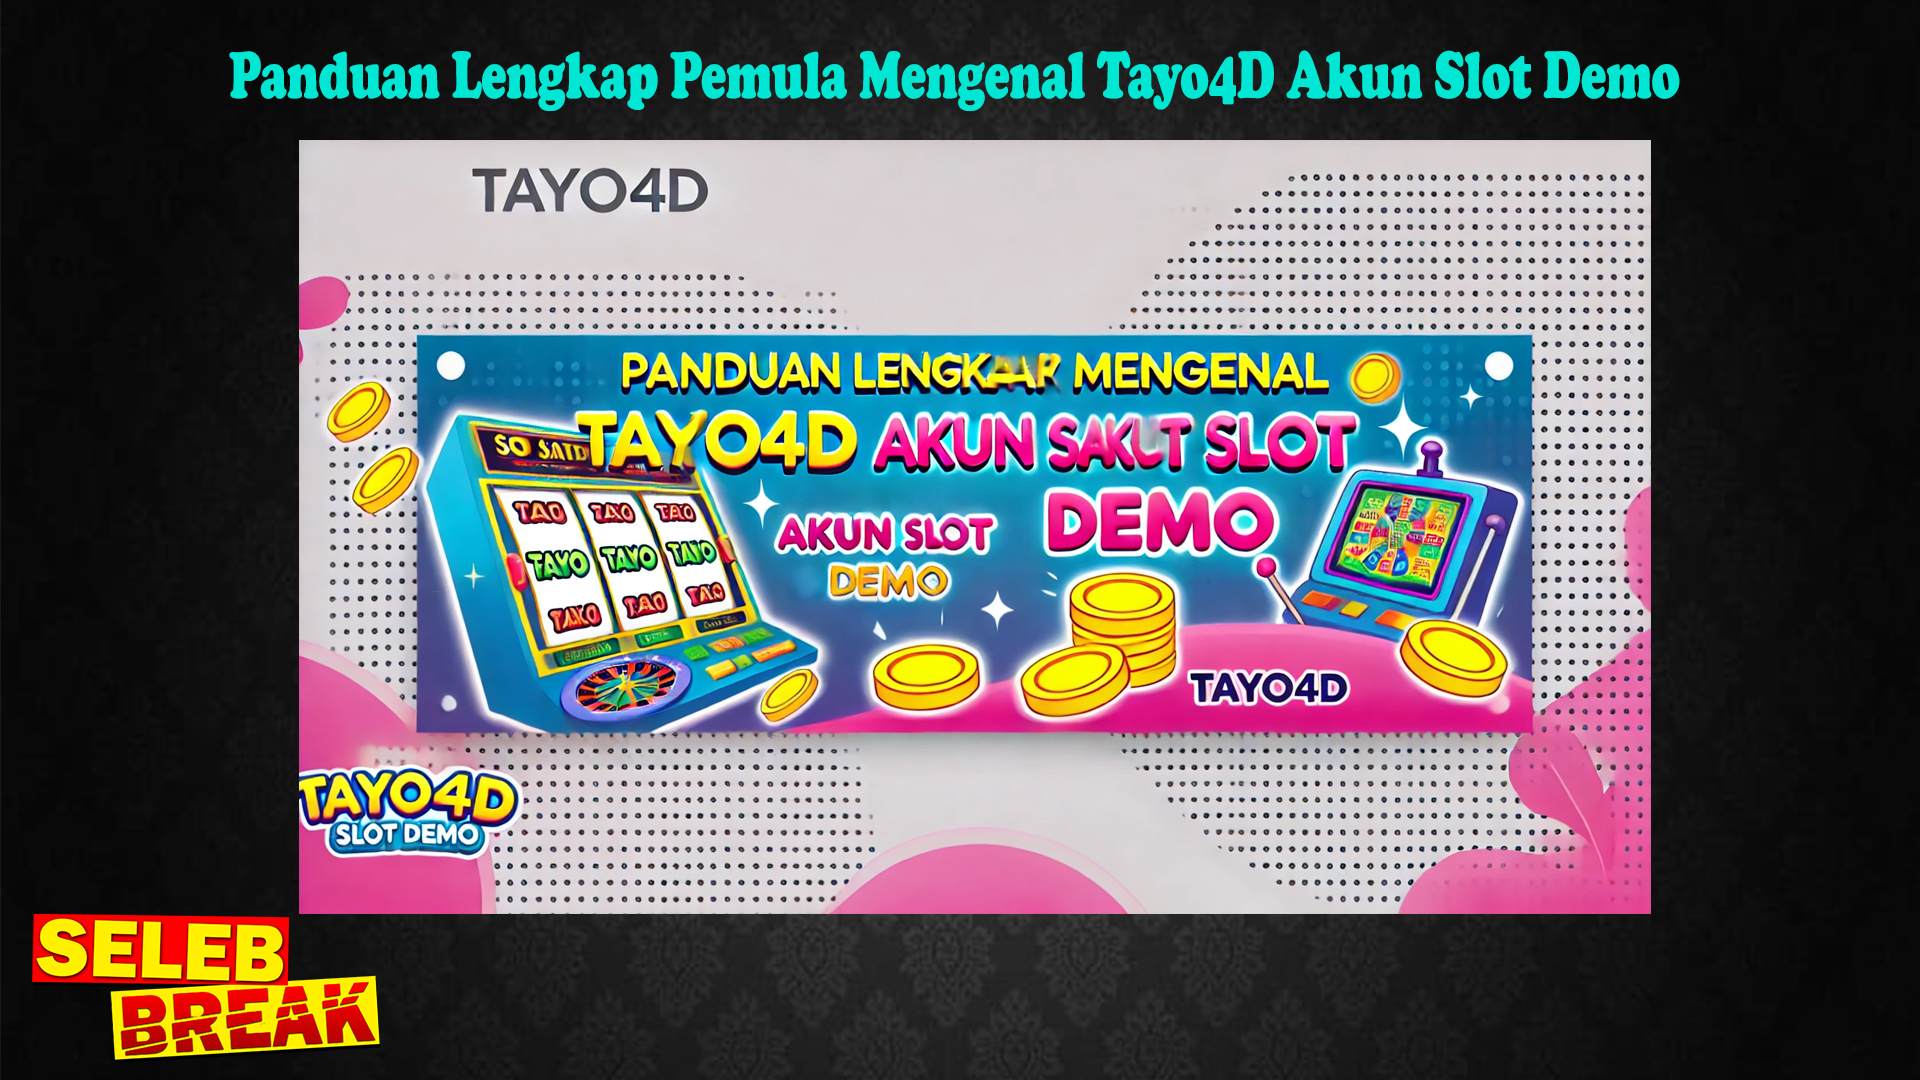 Panduan Lengkap Pemula Mengenal Tayo4D Akun Slot Demo